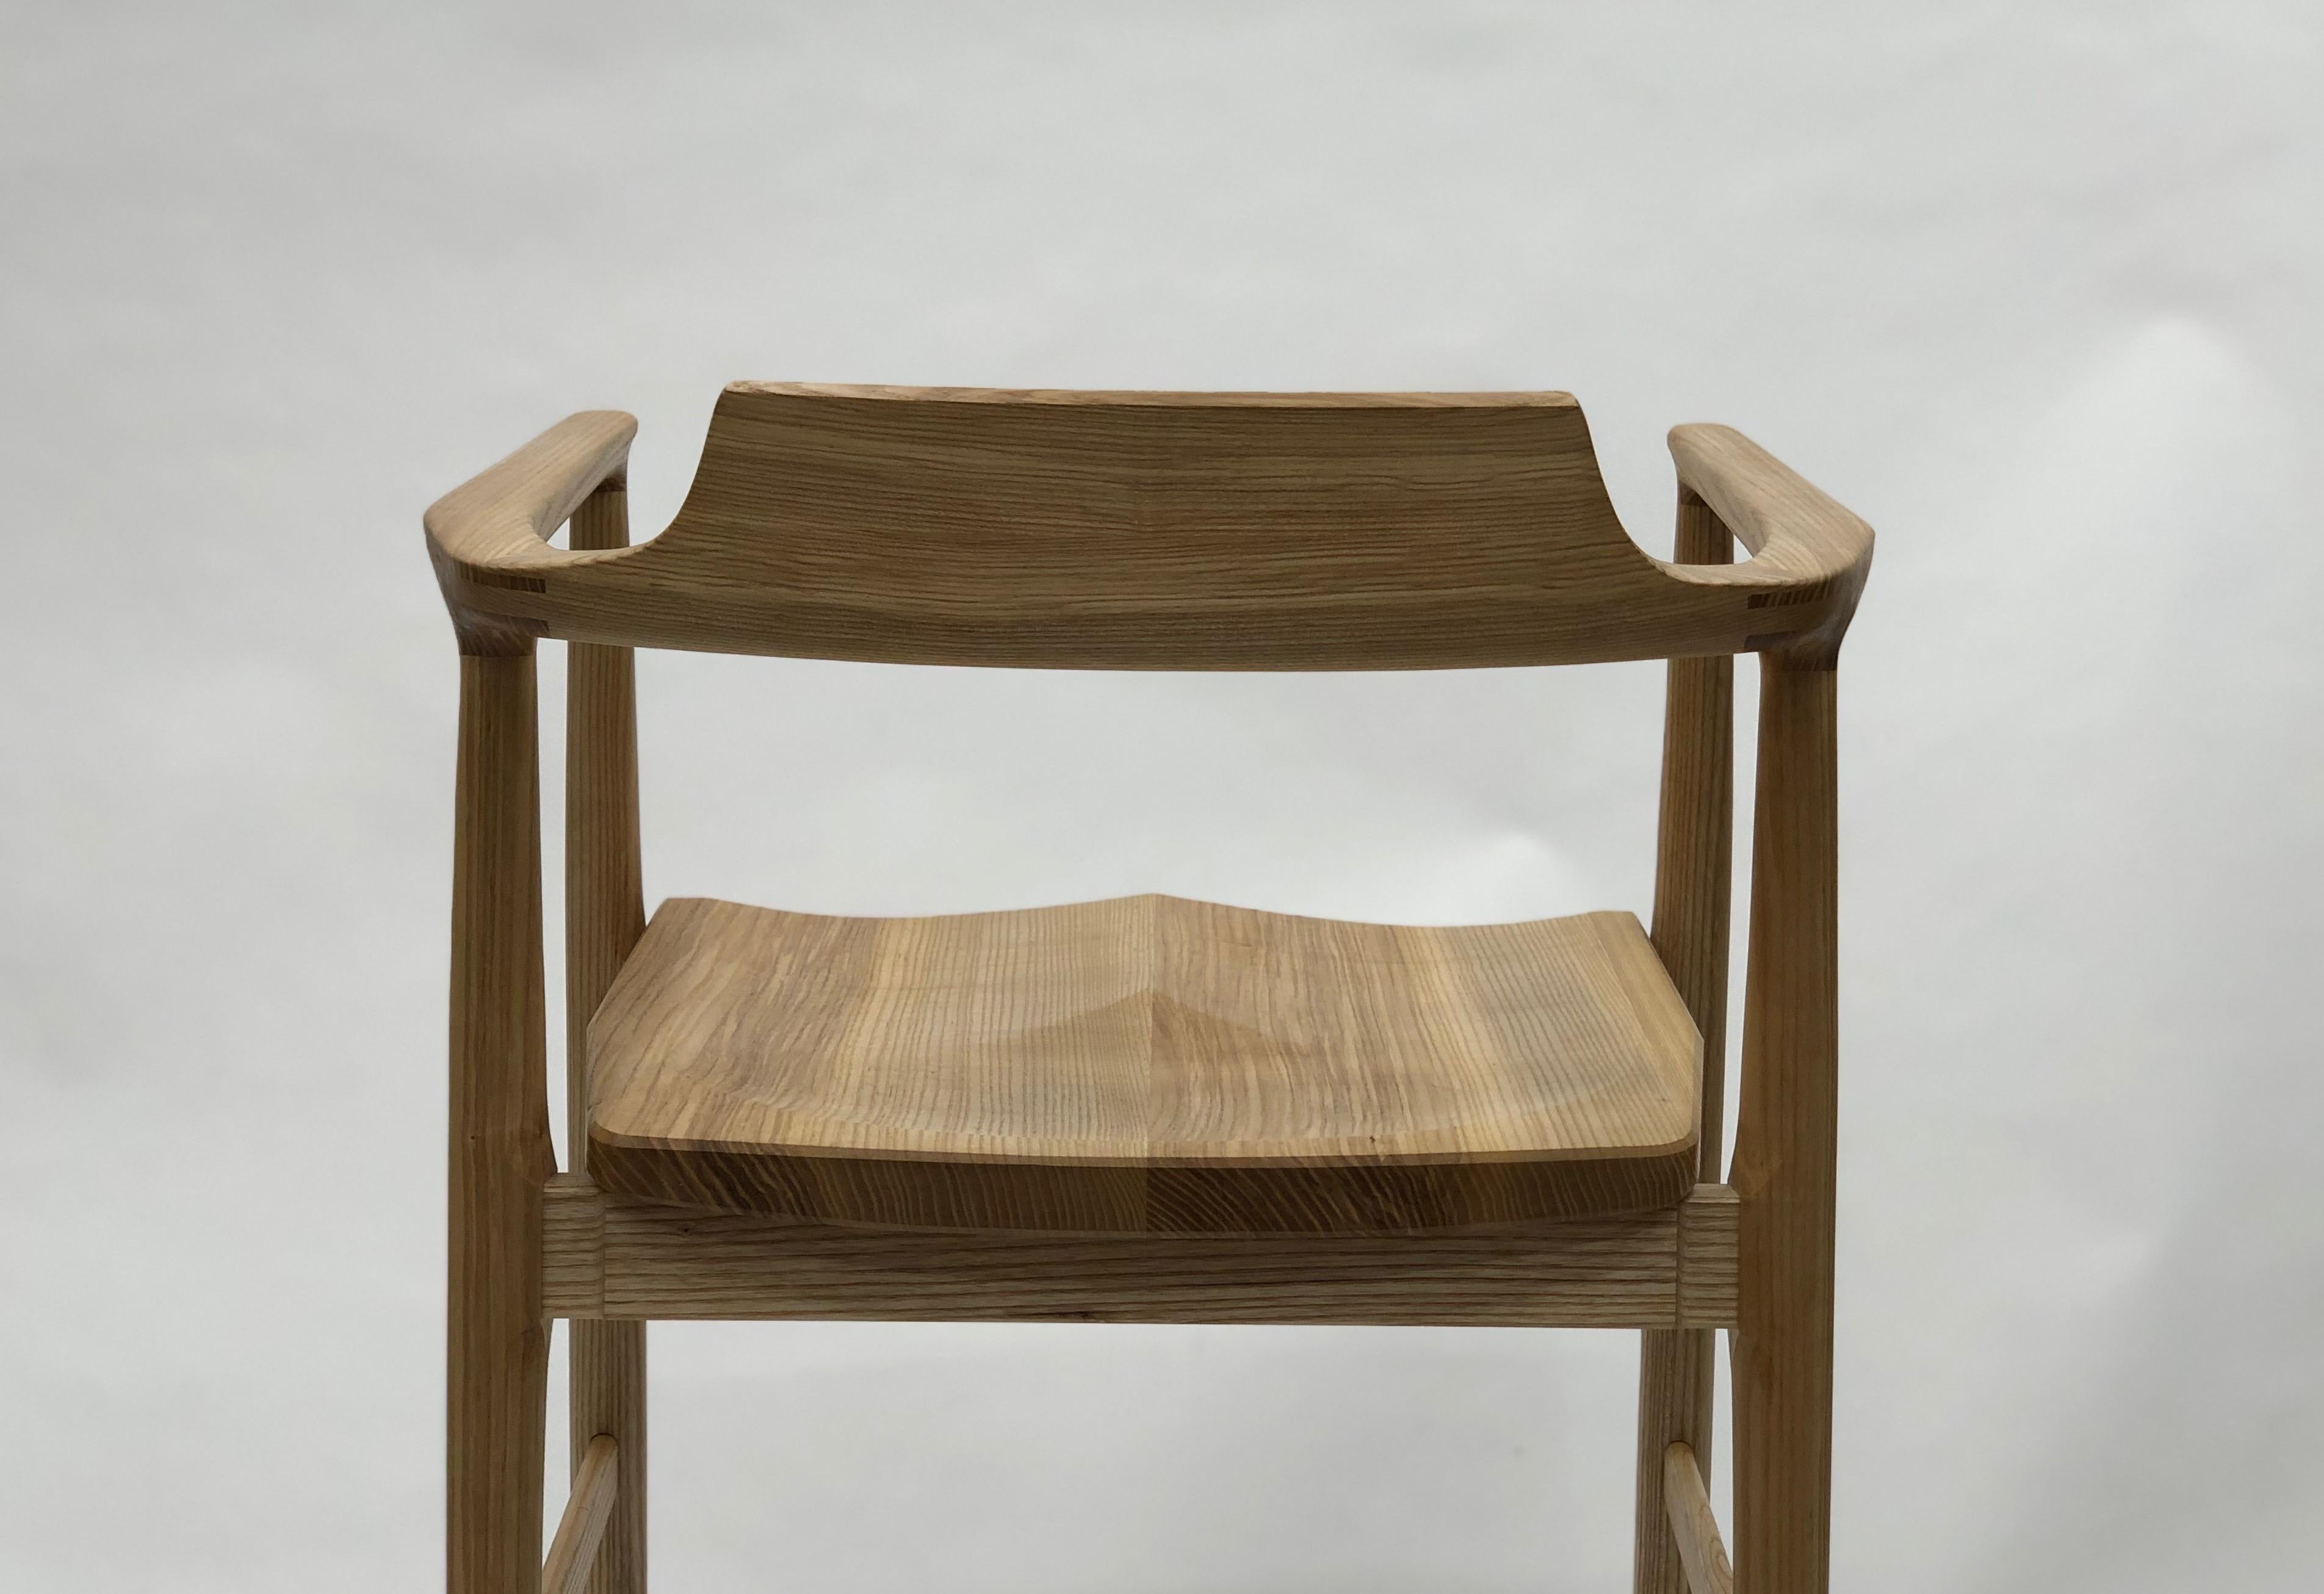 Henry, der Sessel, ist ein Originalentwurf von Brian Holcombe. Ergonomisch auf die menschlichen Proportionen abgestimmt, bietet dieser Stuhl einen hohen Sitzkomfort.

Diese Stühle sind individuell handgefertigt und können auf Anfrage in